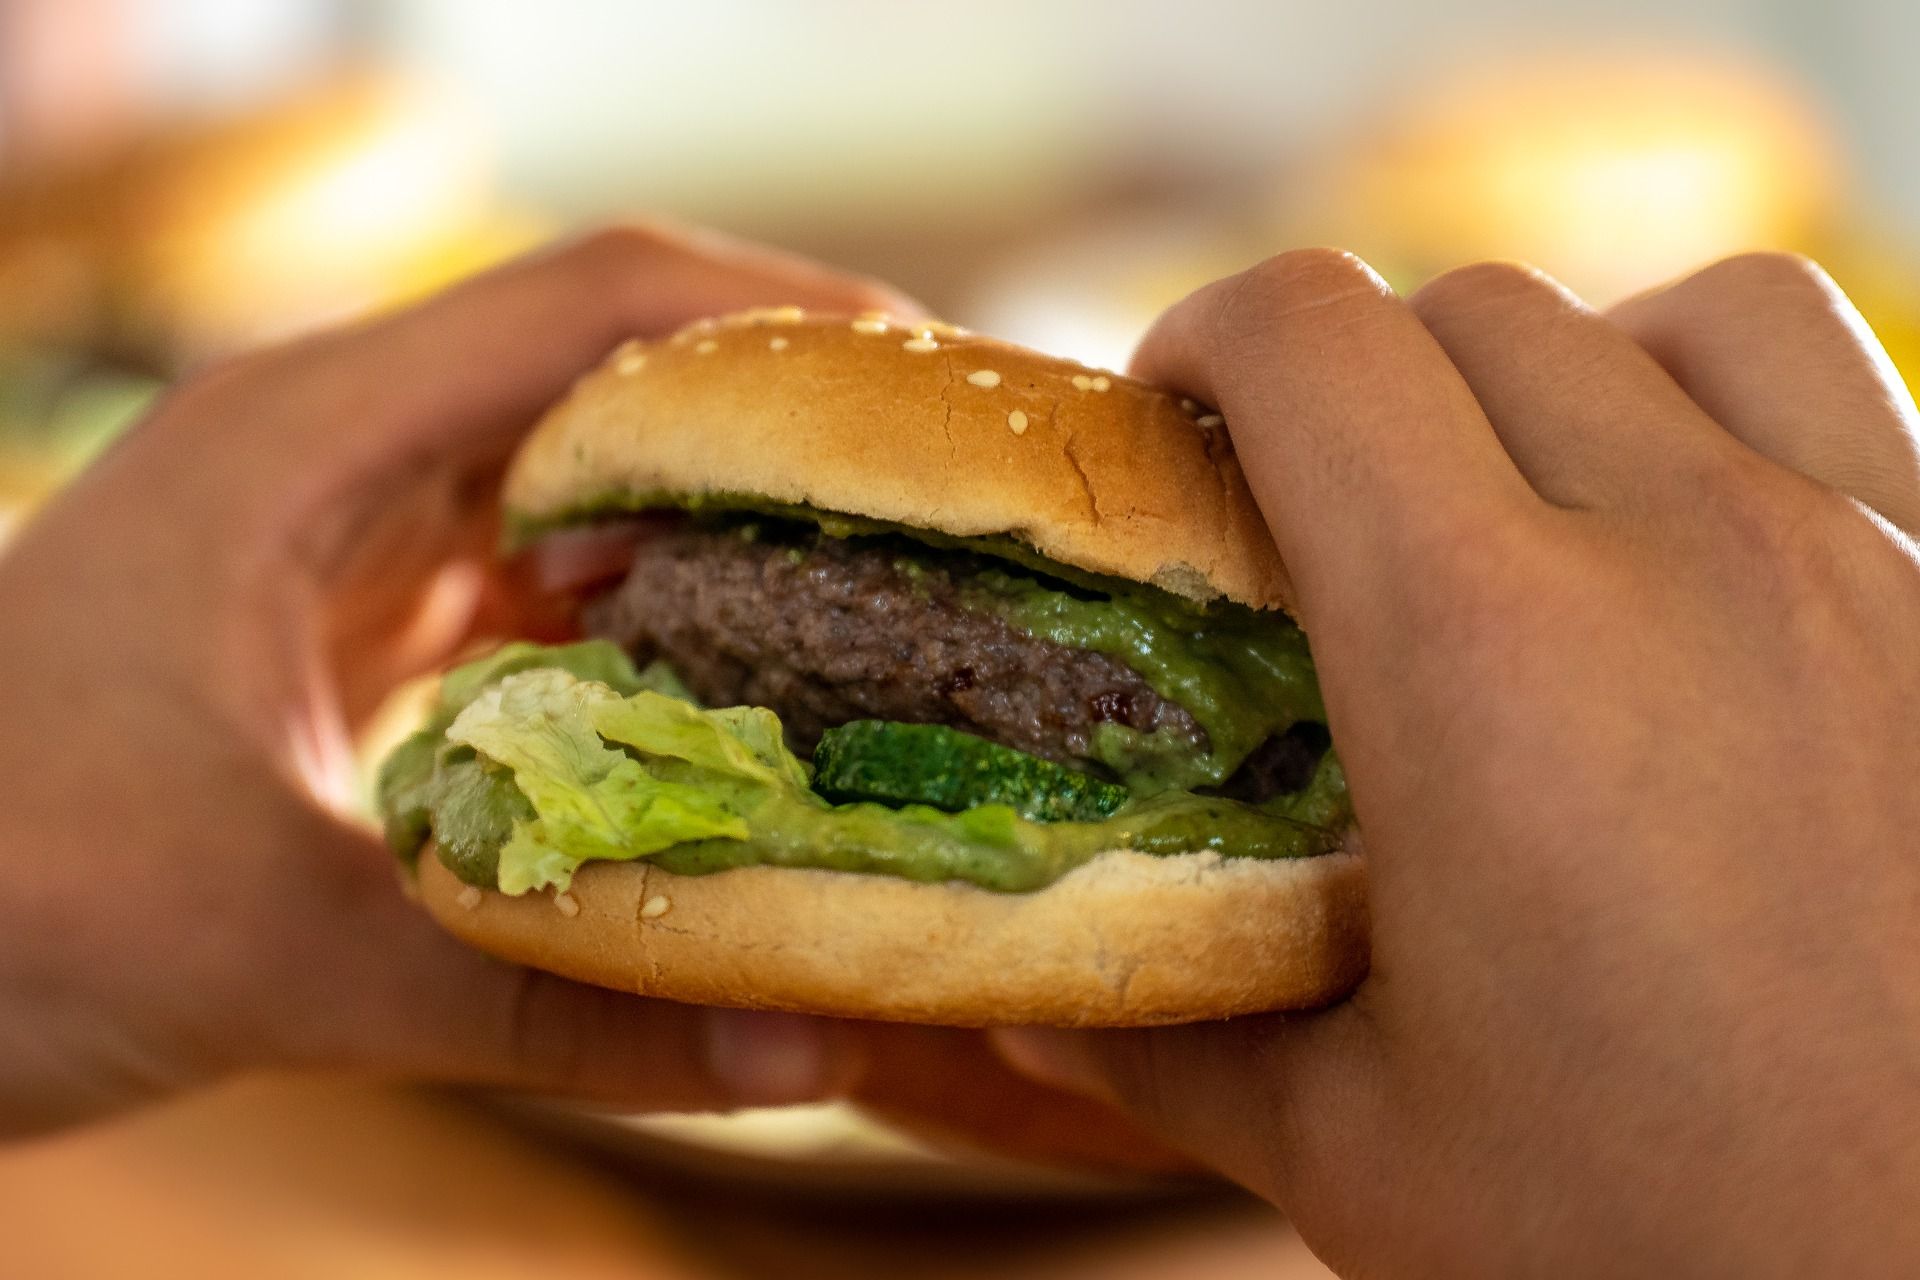 Una persona ingiere comida rápida. Alimentos ultraprocesados / Foto: Pixabay